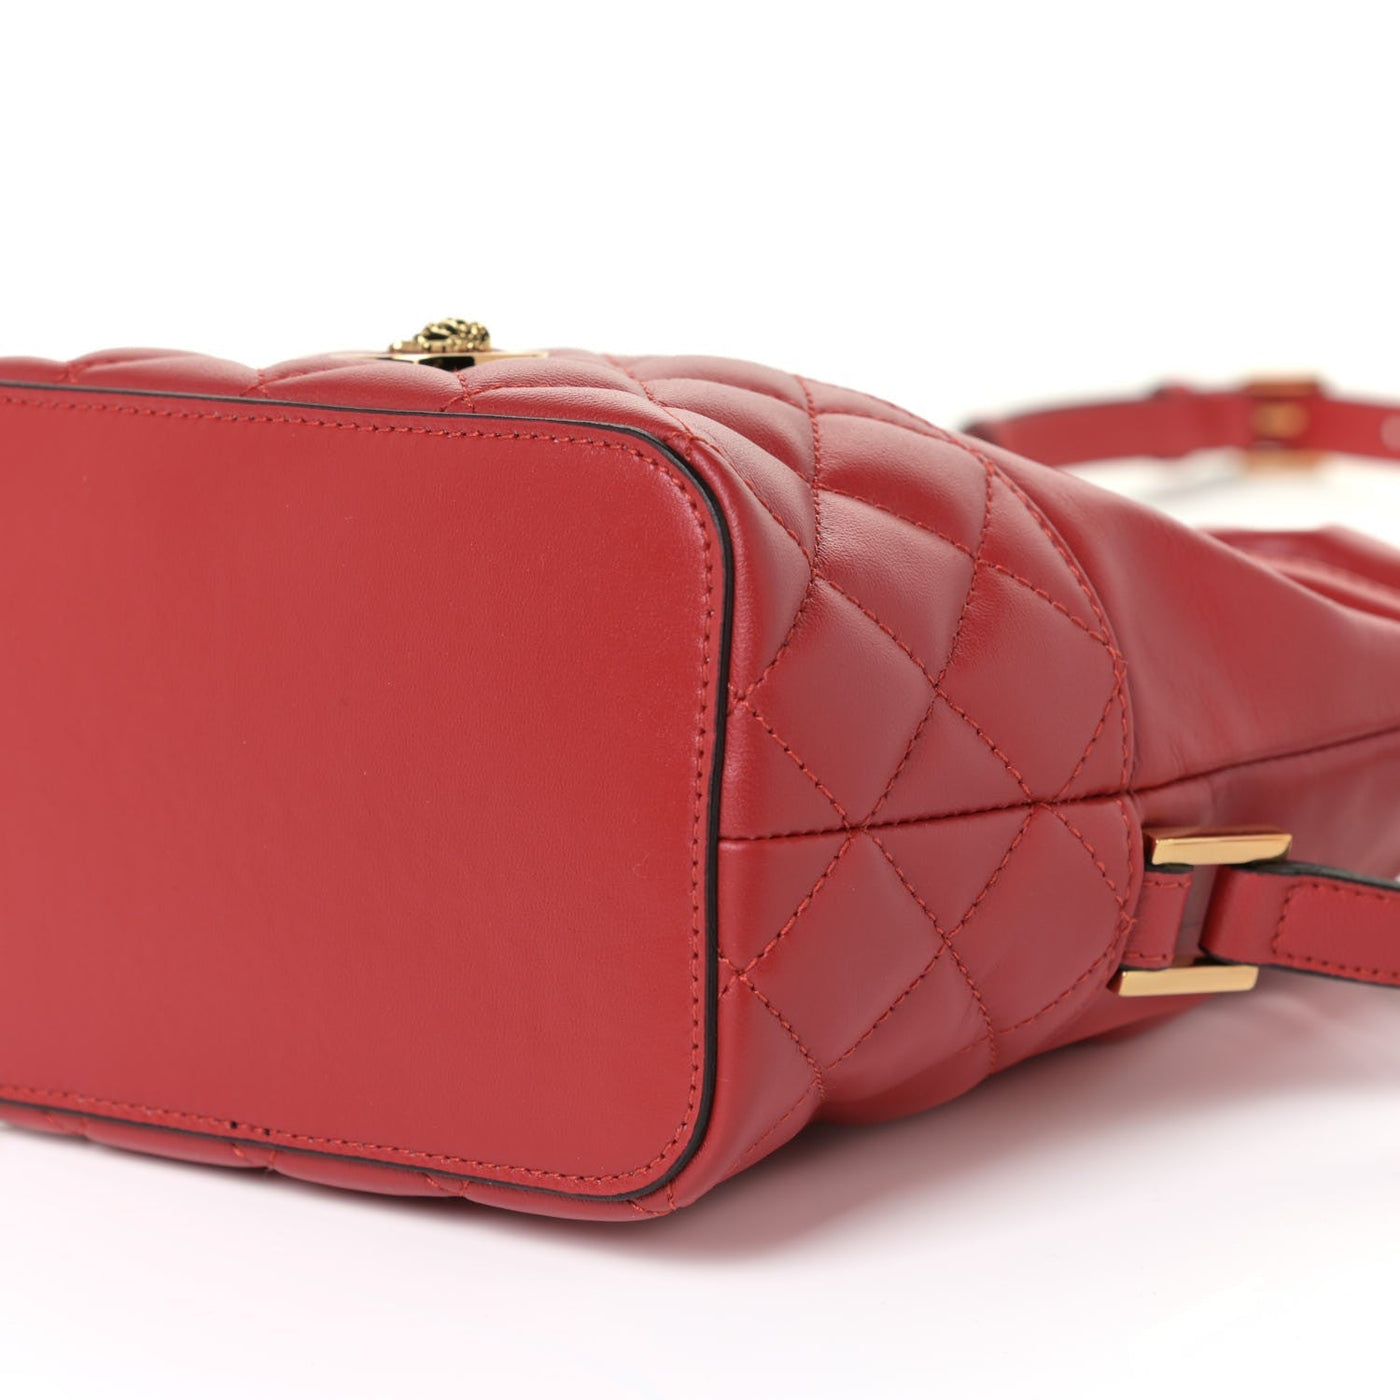 Versace Red Leather Medusa Quilted Drawstring Bucket Bag DBFI173S - LUXURYMRKT